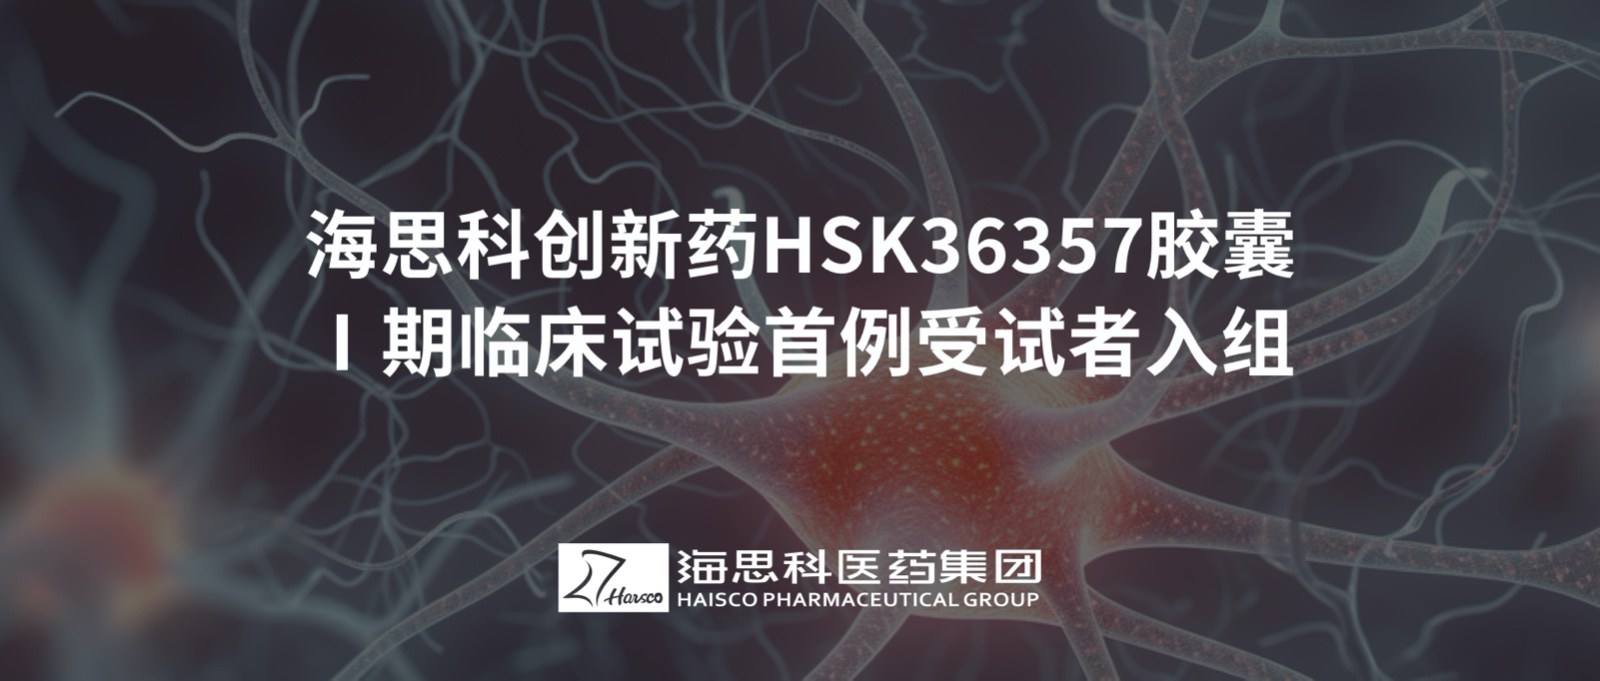 老版新葡萄8883国际官网创新药HSK36357胶囊Ⅰ期临床试验首例受试者入组